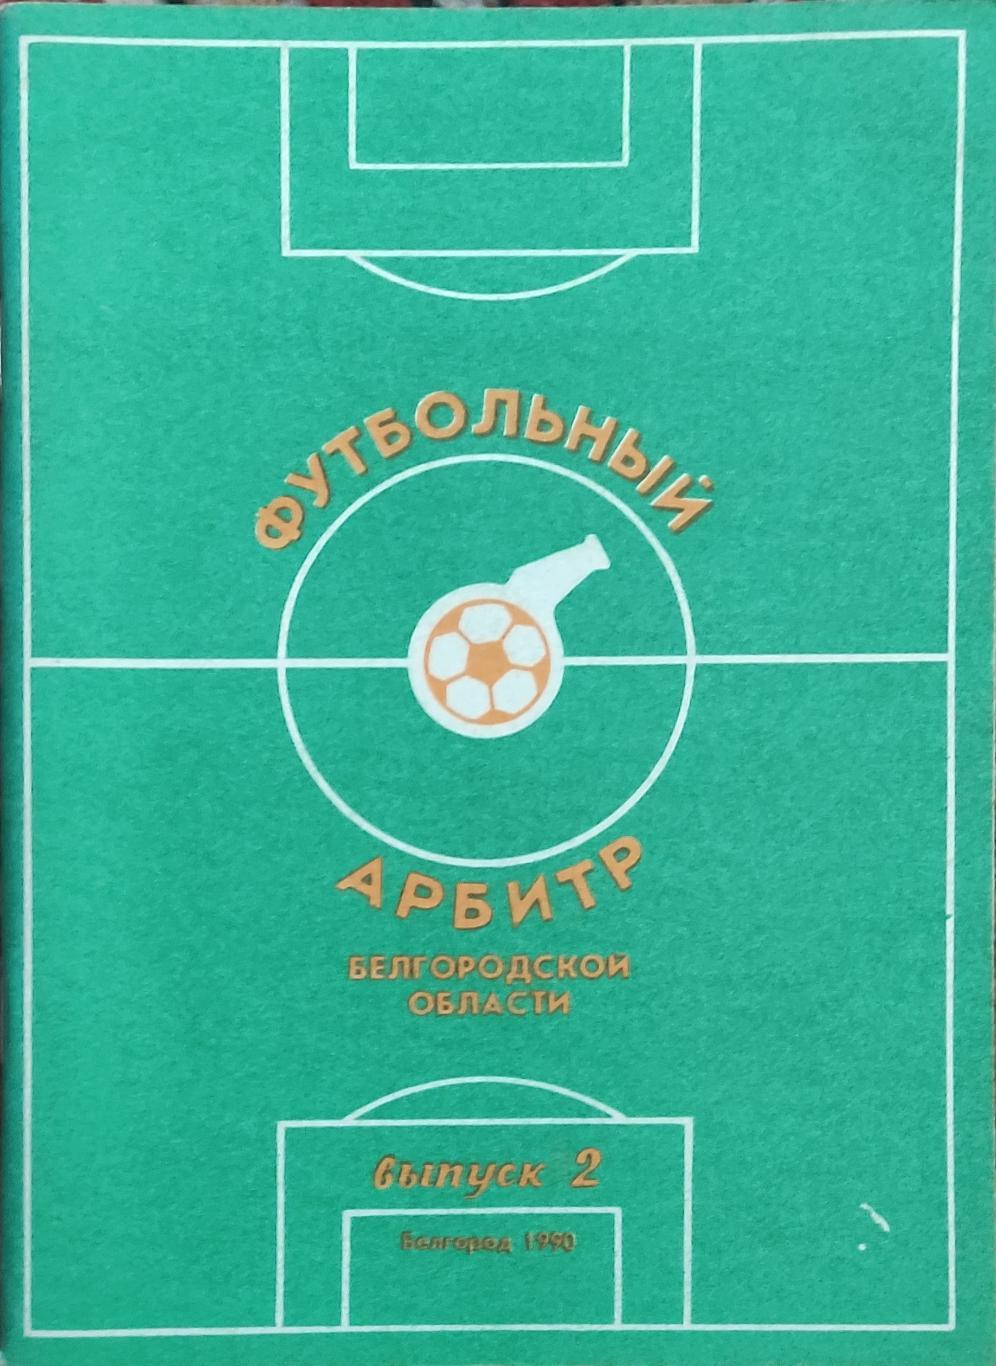 Футбольный арбитр.Белгород 1990